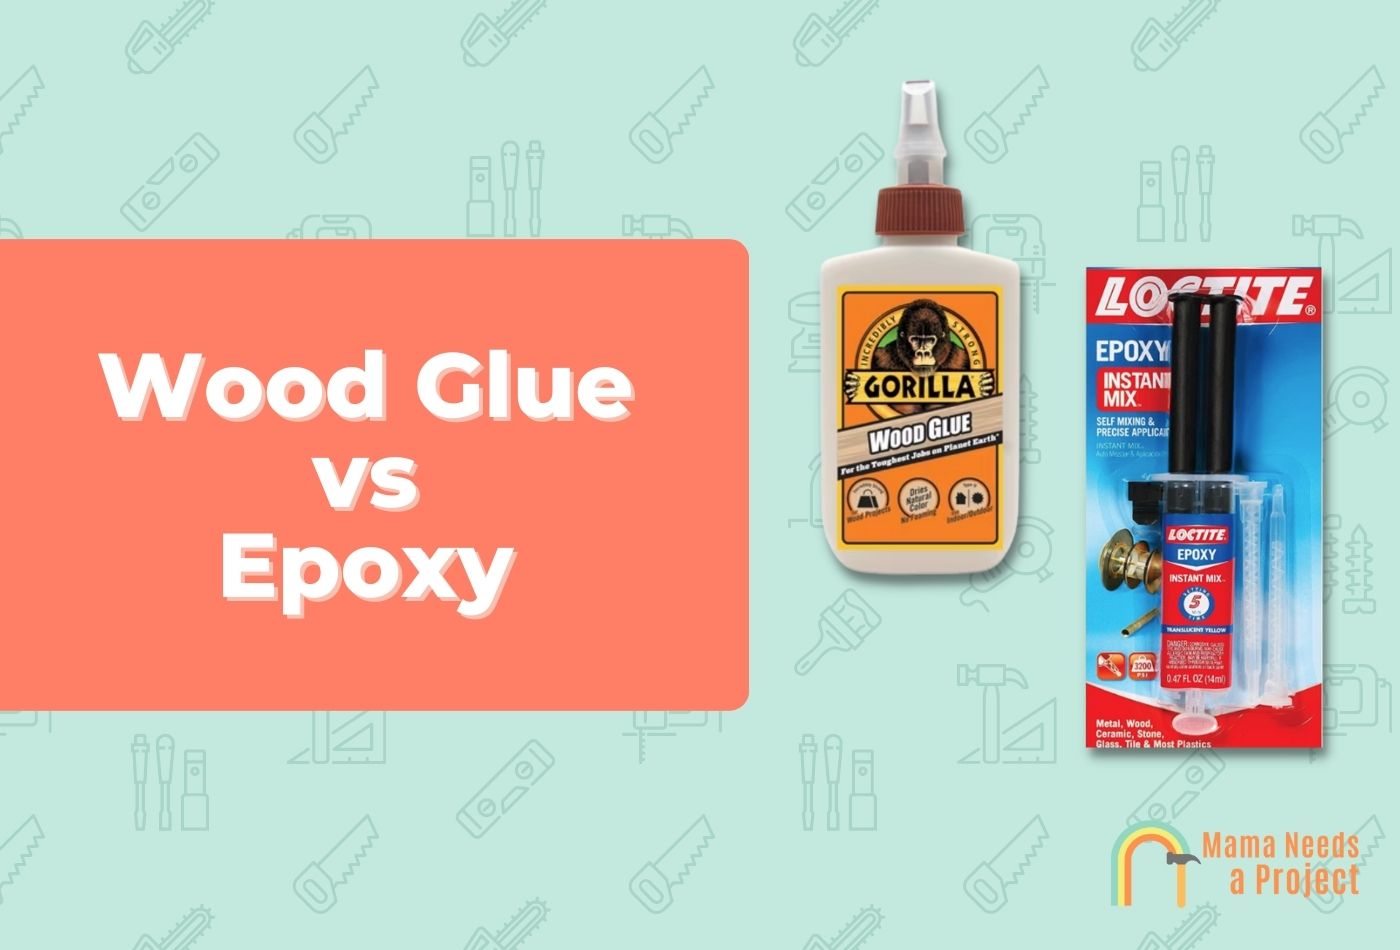 Wood Glue vs Epoxy